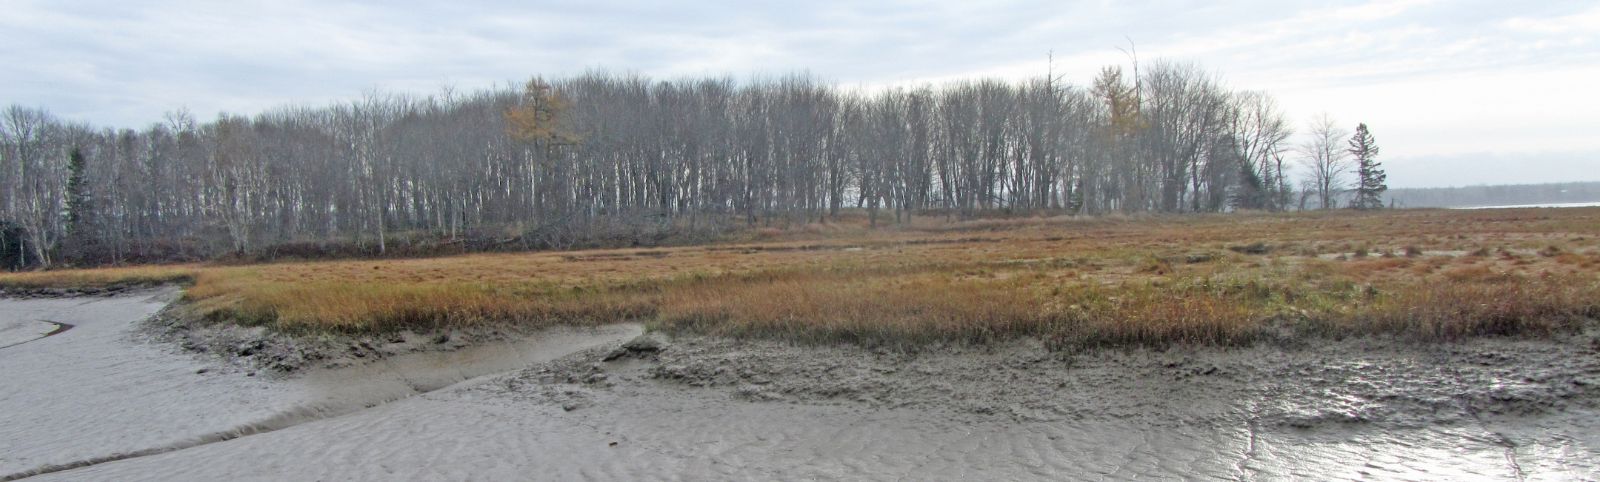 Marsh Island Loktite Snooded Trotline, 7/32 x 1,200